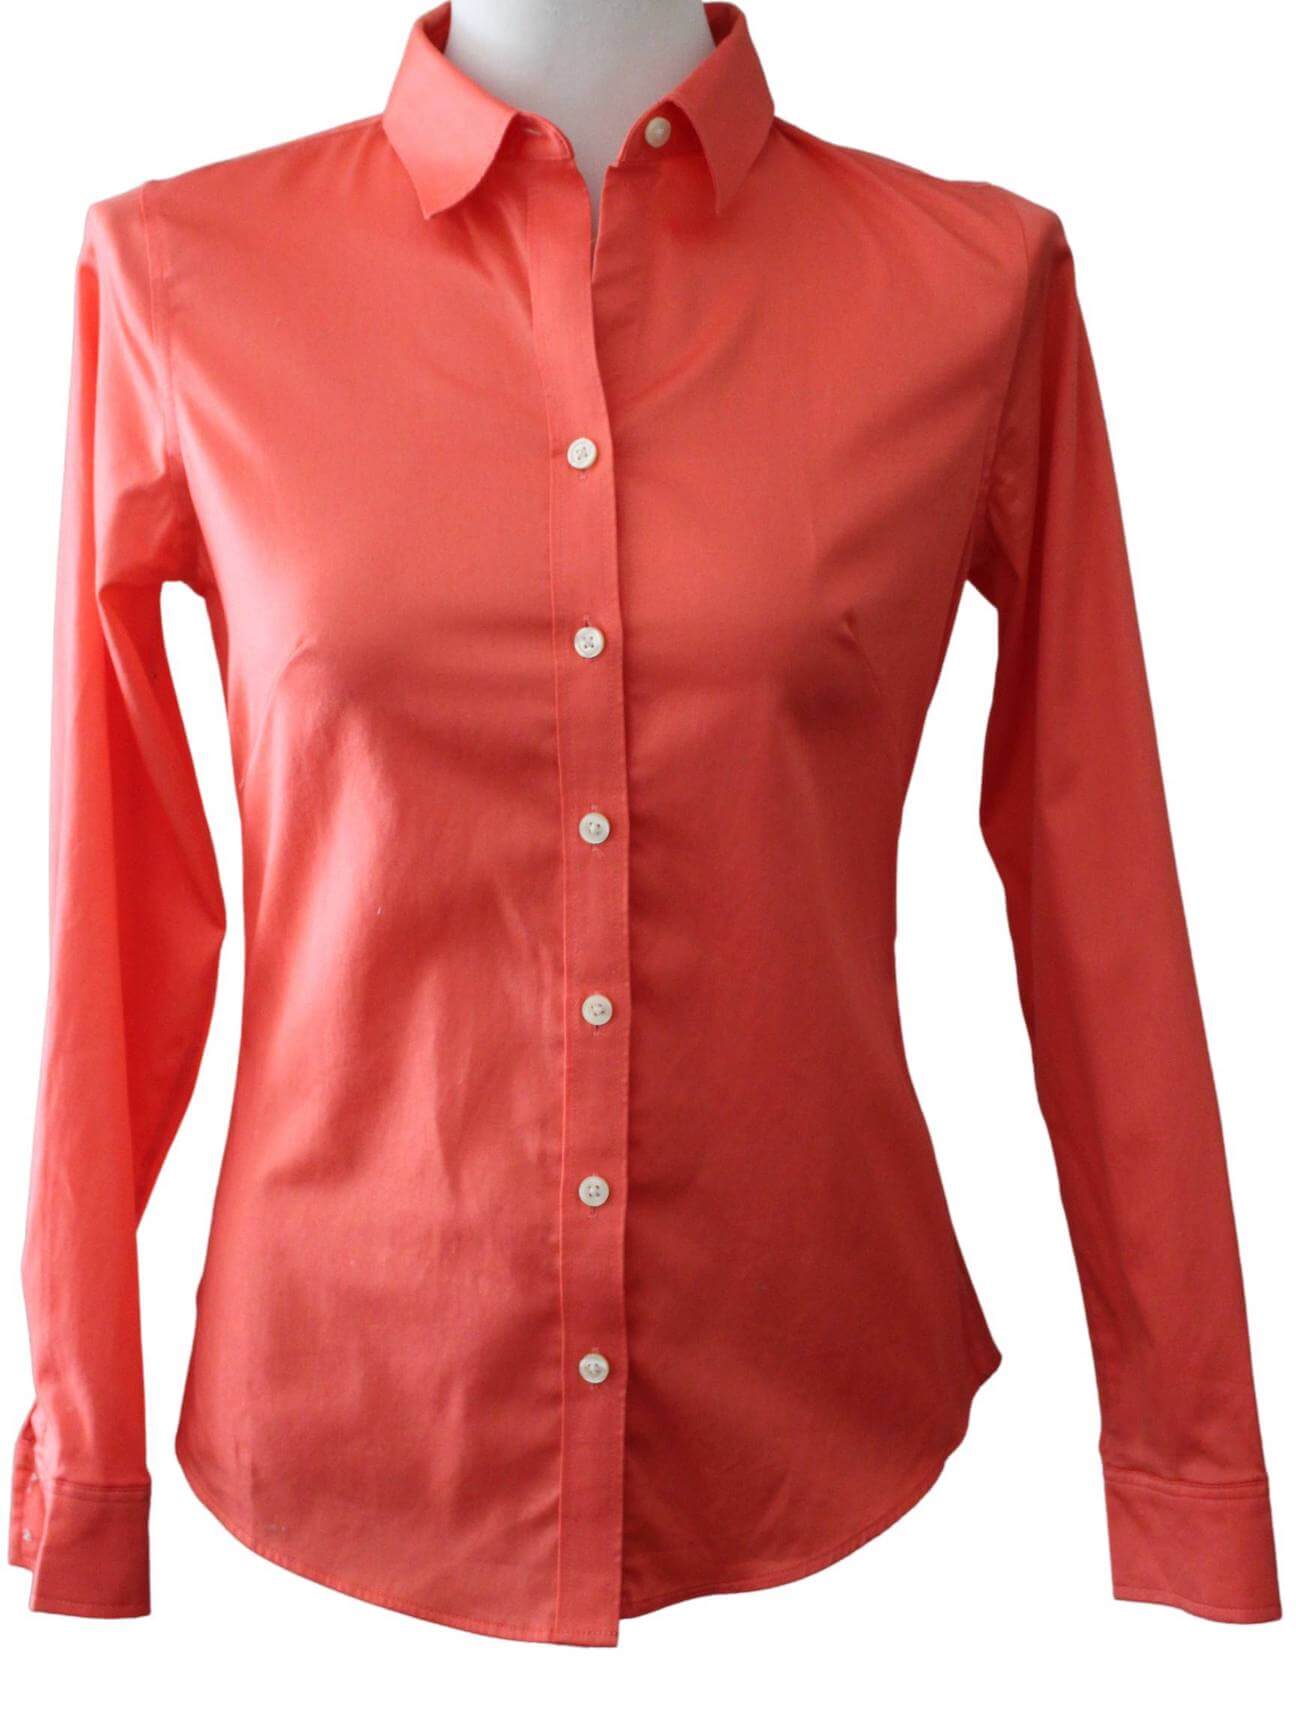 Warm Spring BANANA REPUBLIC cantaloupe orange button down shirt